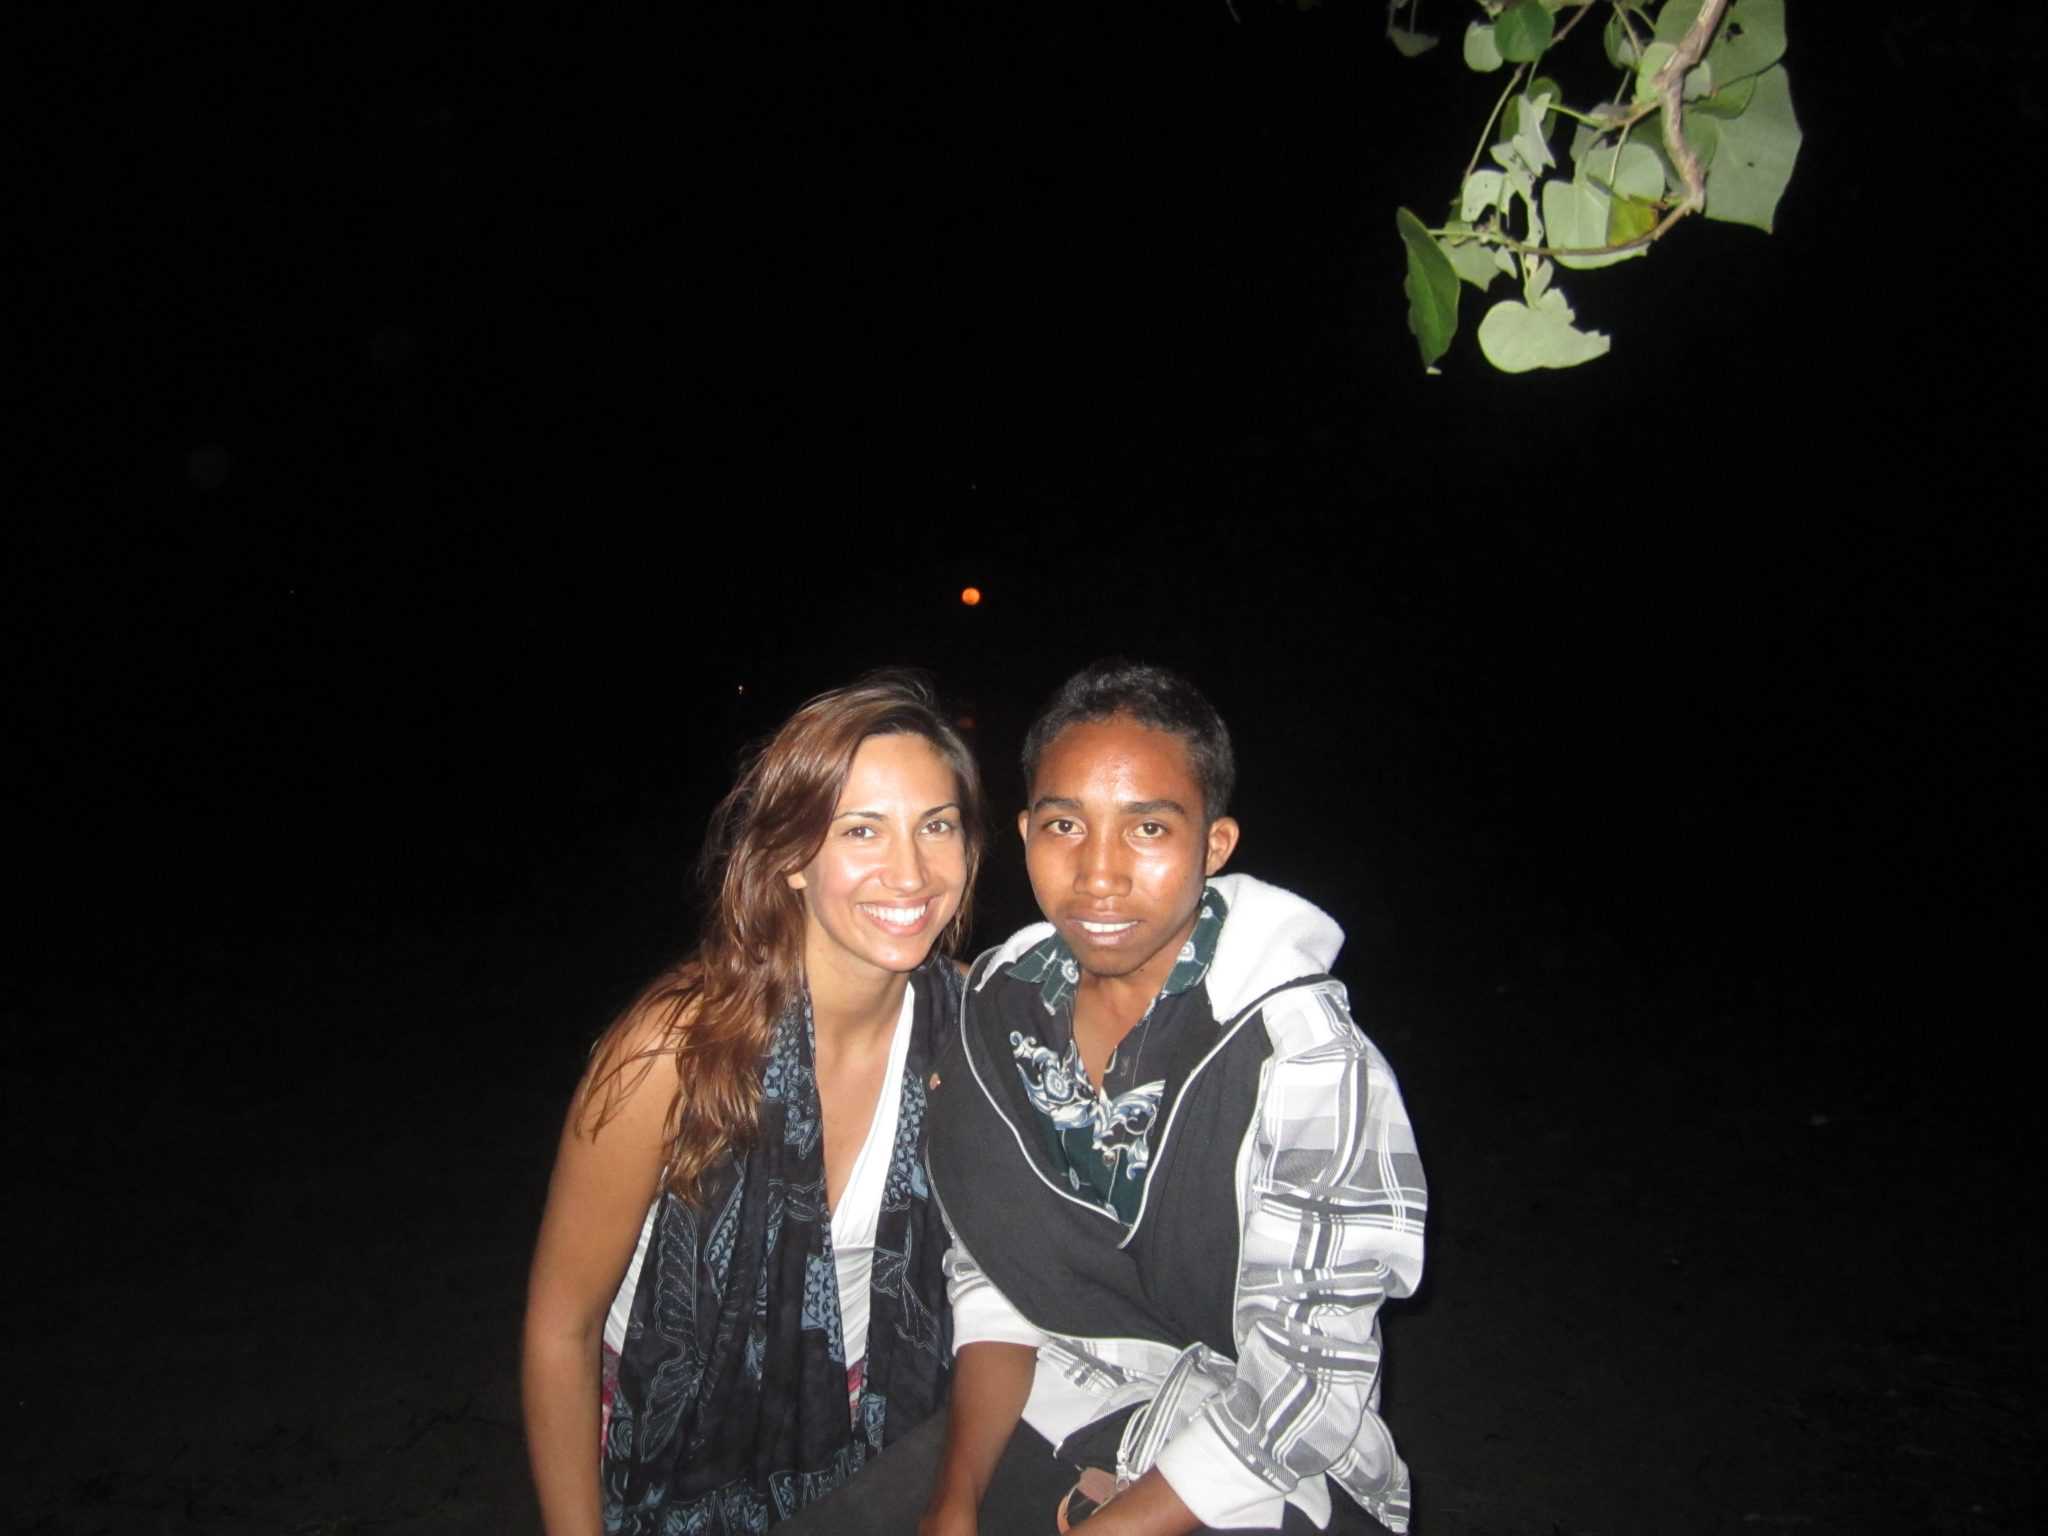 Em Ata£ro, com um timorense, Fernando de Ara£joIMG_1400